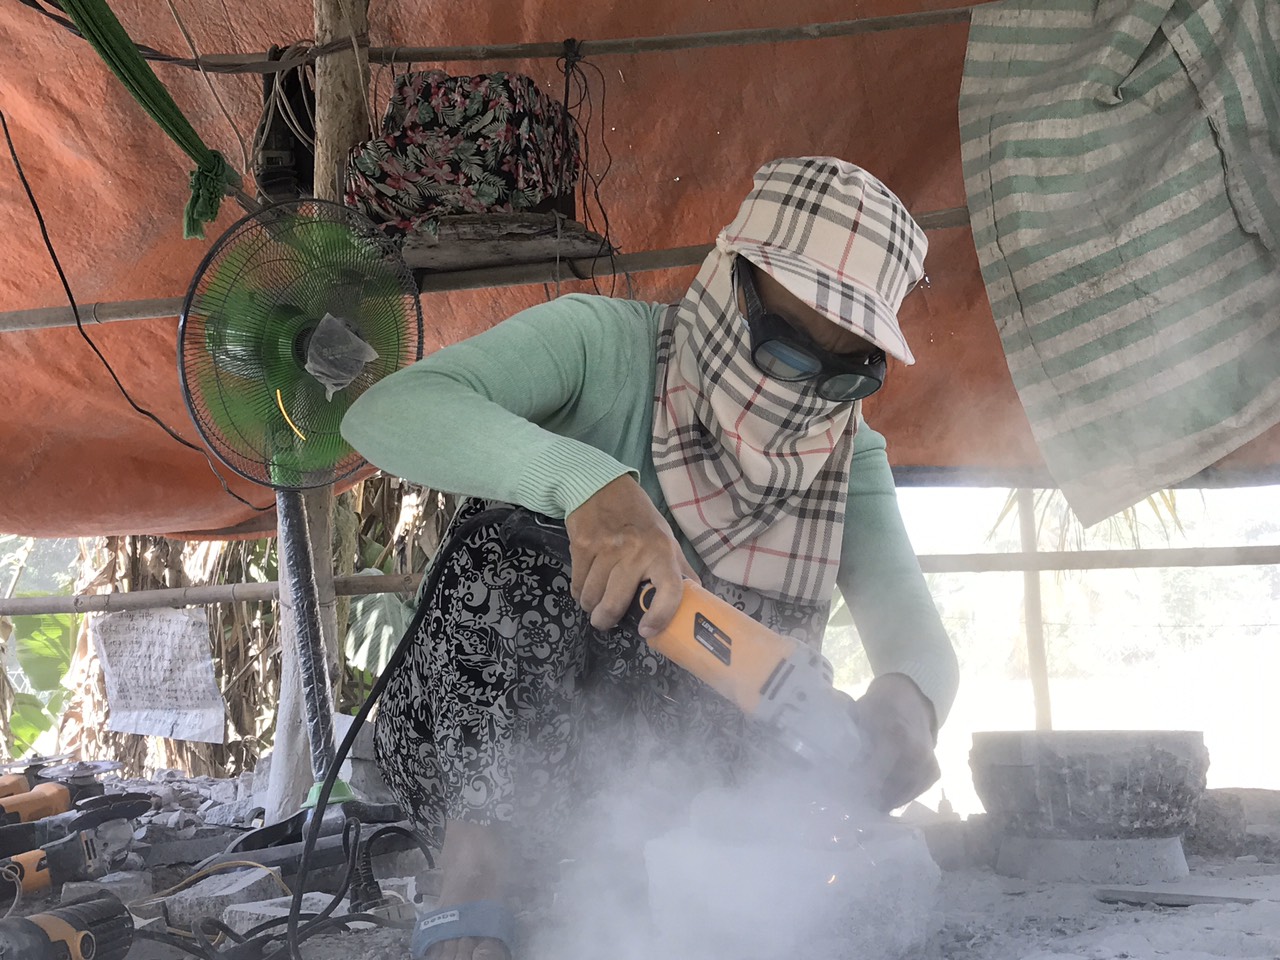 Xóm ly hương: Trở về quê làm nghề cối đá truyền thống